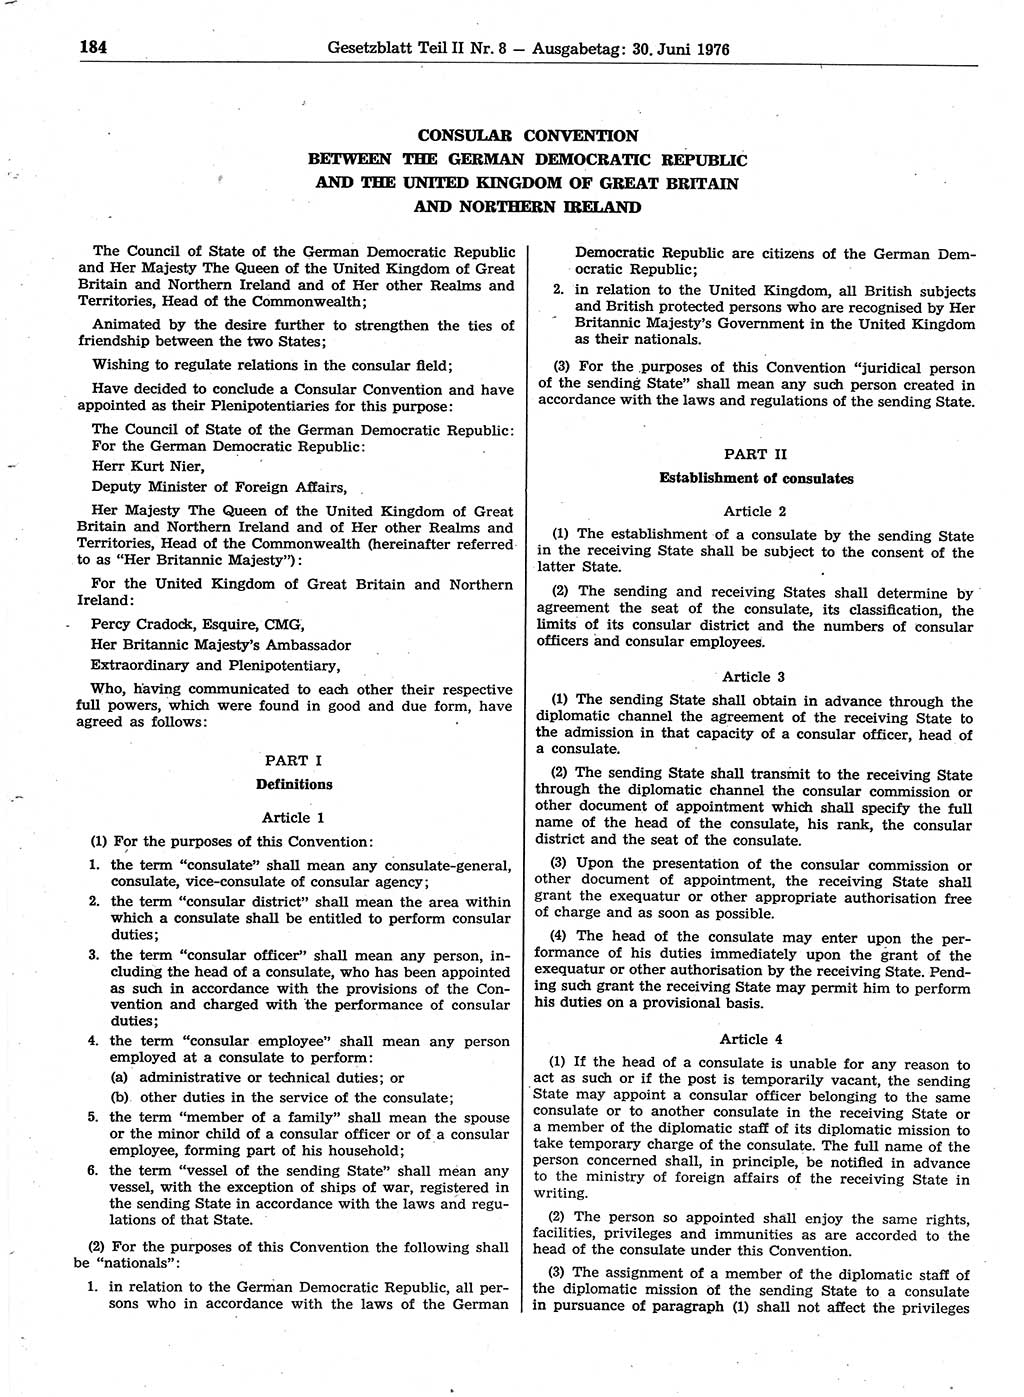 Gesetzblatt (GBl.) der Deutschen Demokratischen Republik (DDR) Teil ⅠⅠ 1976, Seite 184 (GBl. DDR ⅠⅠ 1976, S. 184)